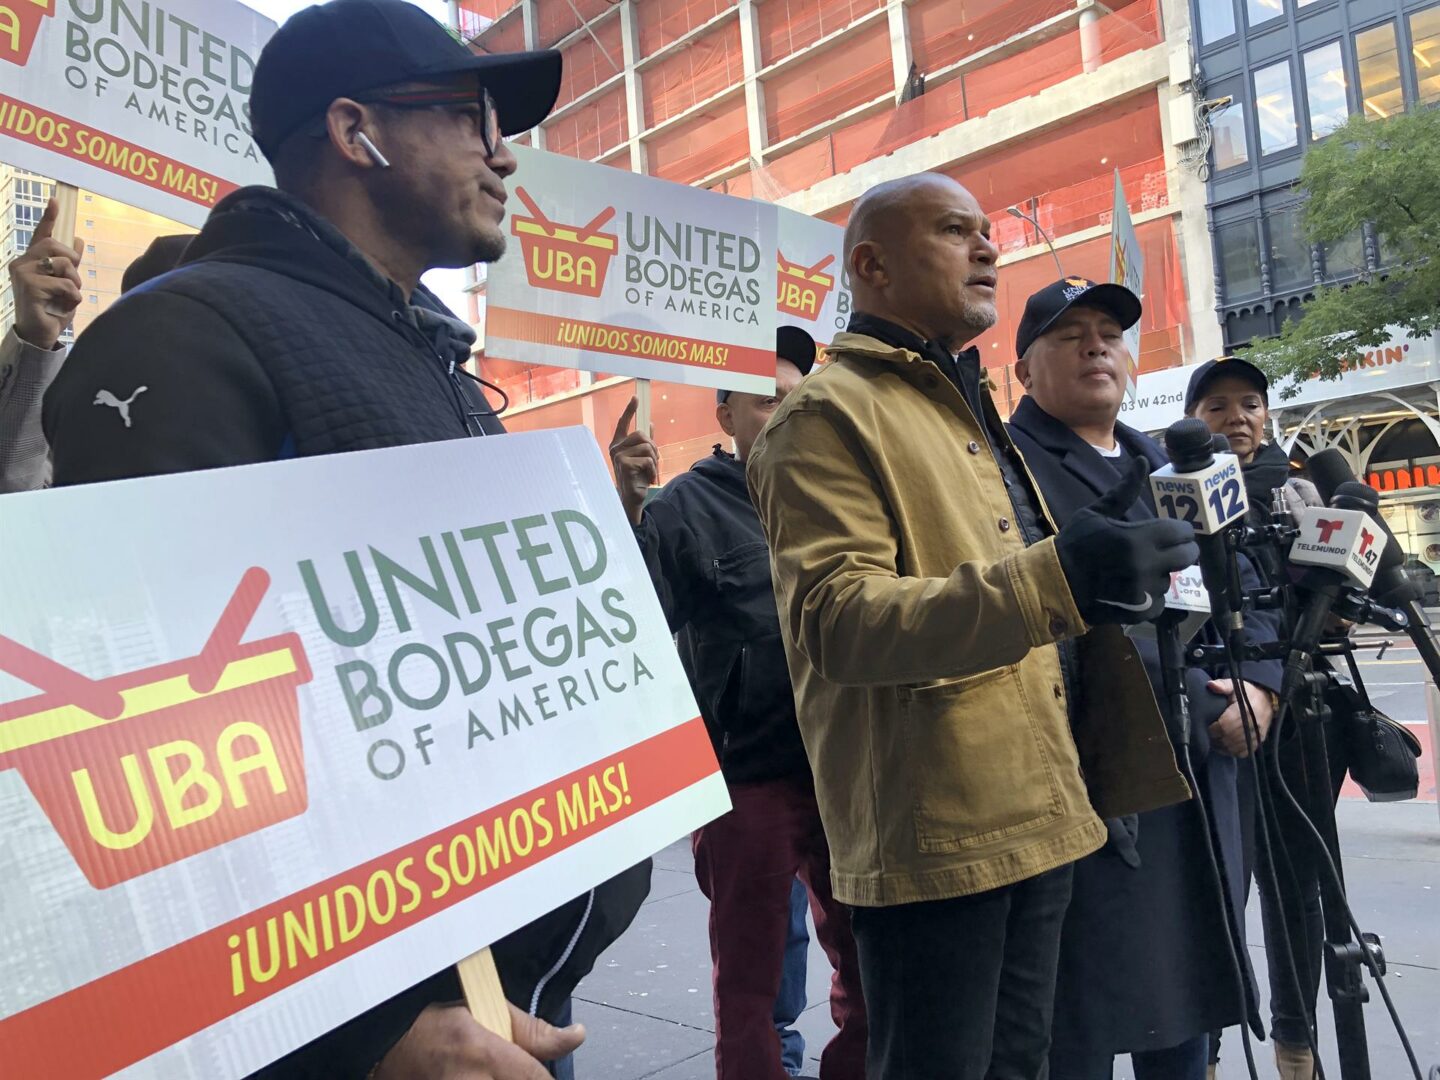 Bodegas de Nueva York dispuestas a emplear a “miles” de inmigrantes latinos